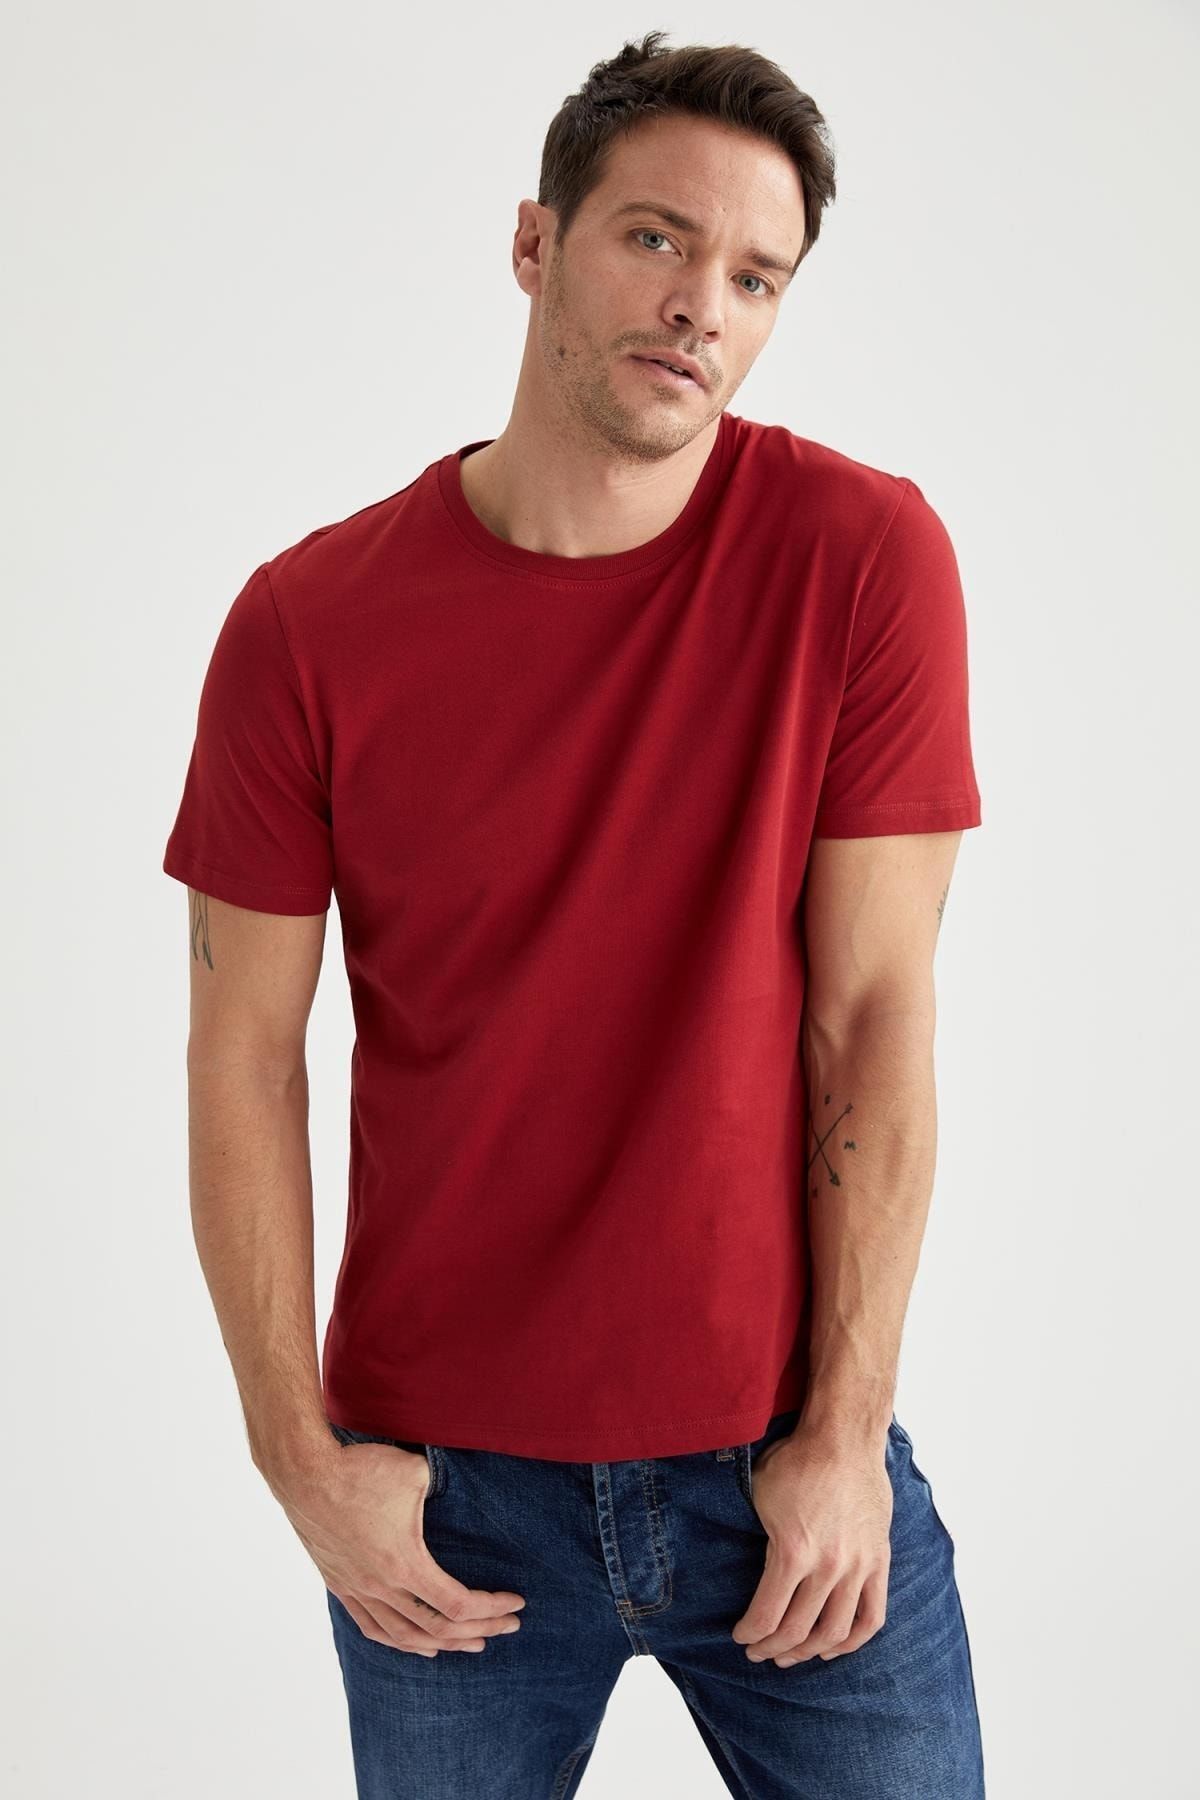 تی شرت آستین کوتاه مردانه رنگ قرمز از برند دفاکتو DeFacto (برند ترکیه)